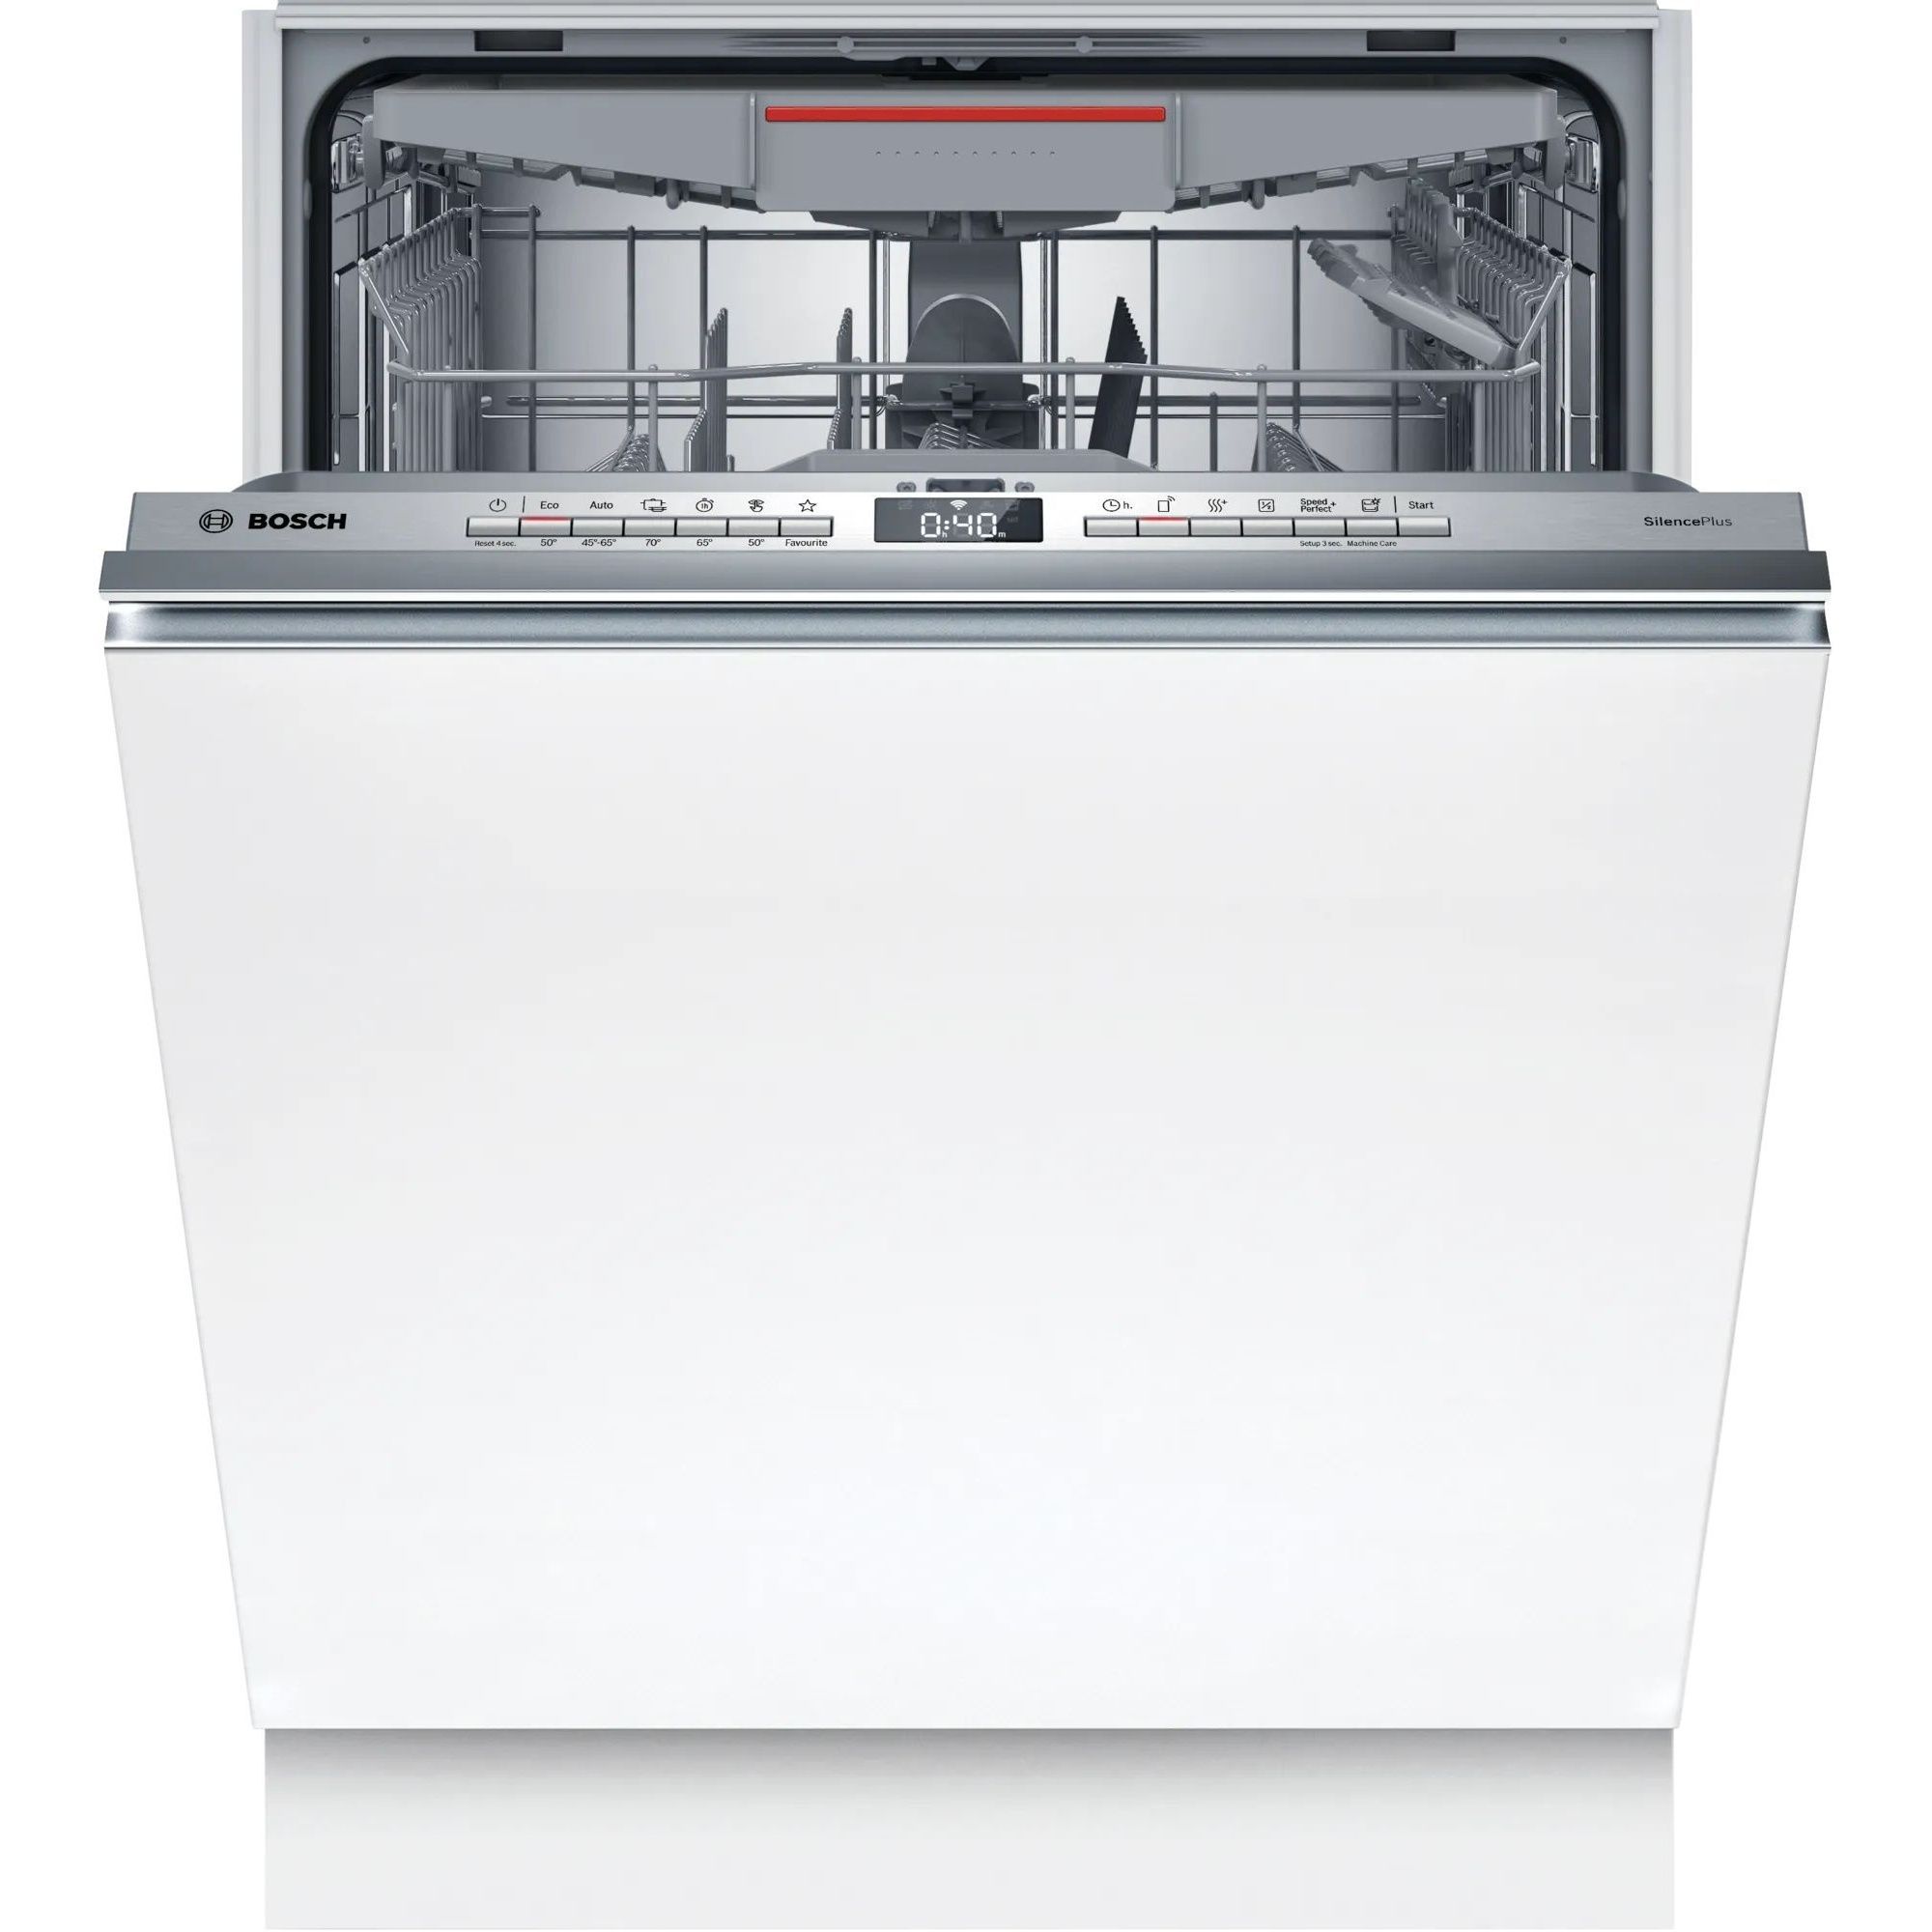 Встроенная посудомоечная машина 60 см горенье. Bosch smv25bx02r. Посудомоечная машина Bosch spv2imy2er. Встраиваемая посудомоечная машина 60 см Bosch smv4iax3ir. Hansa Zim 4757 ev.